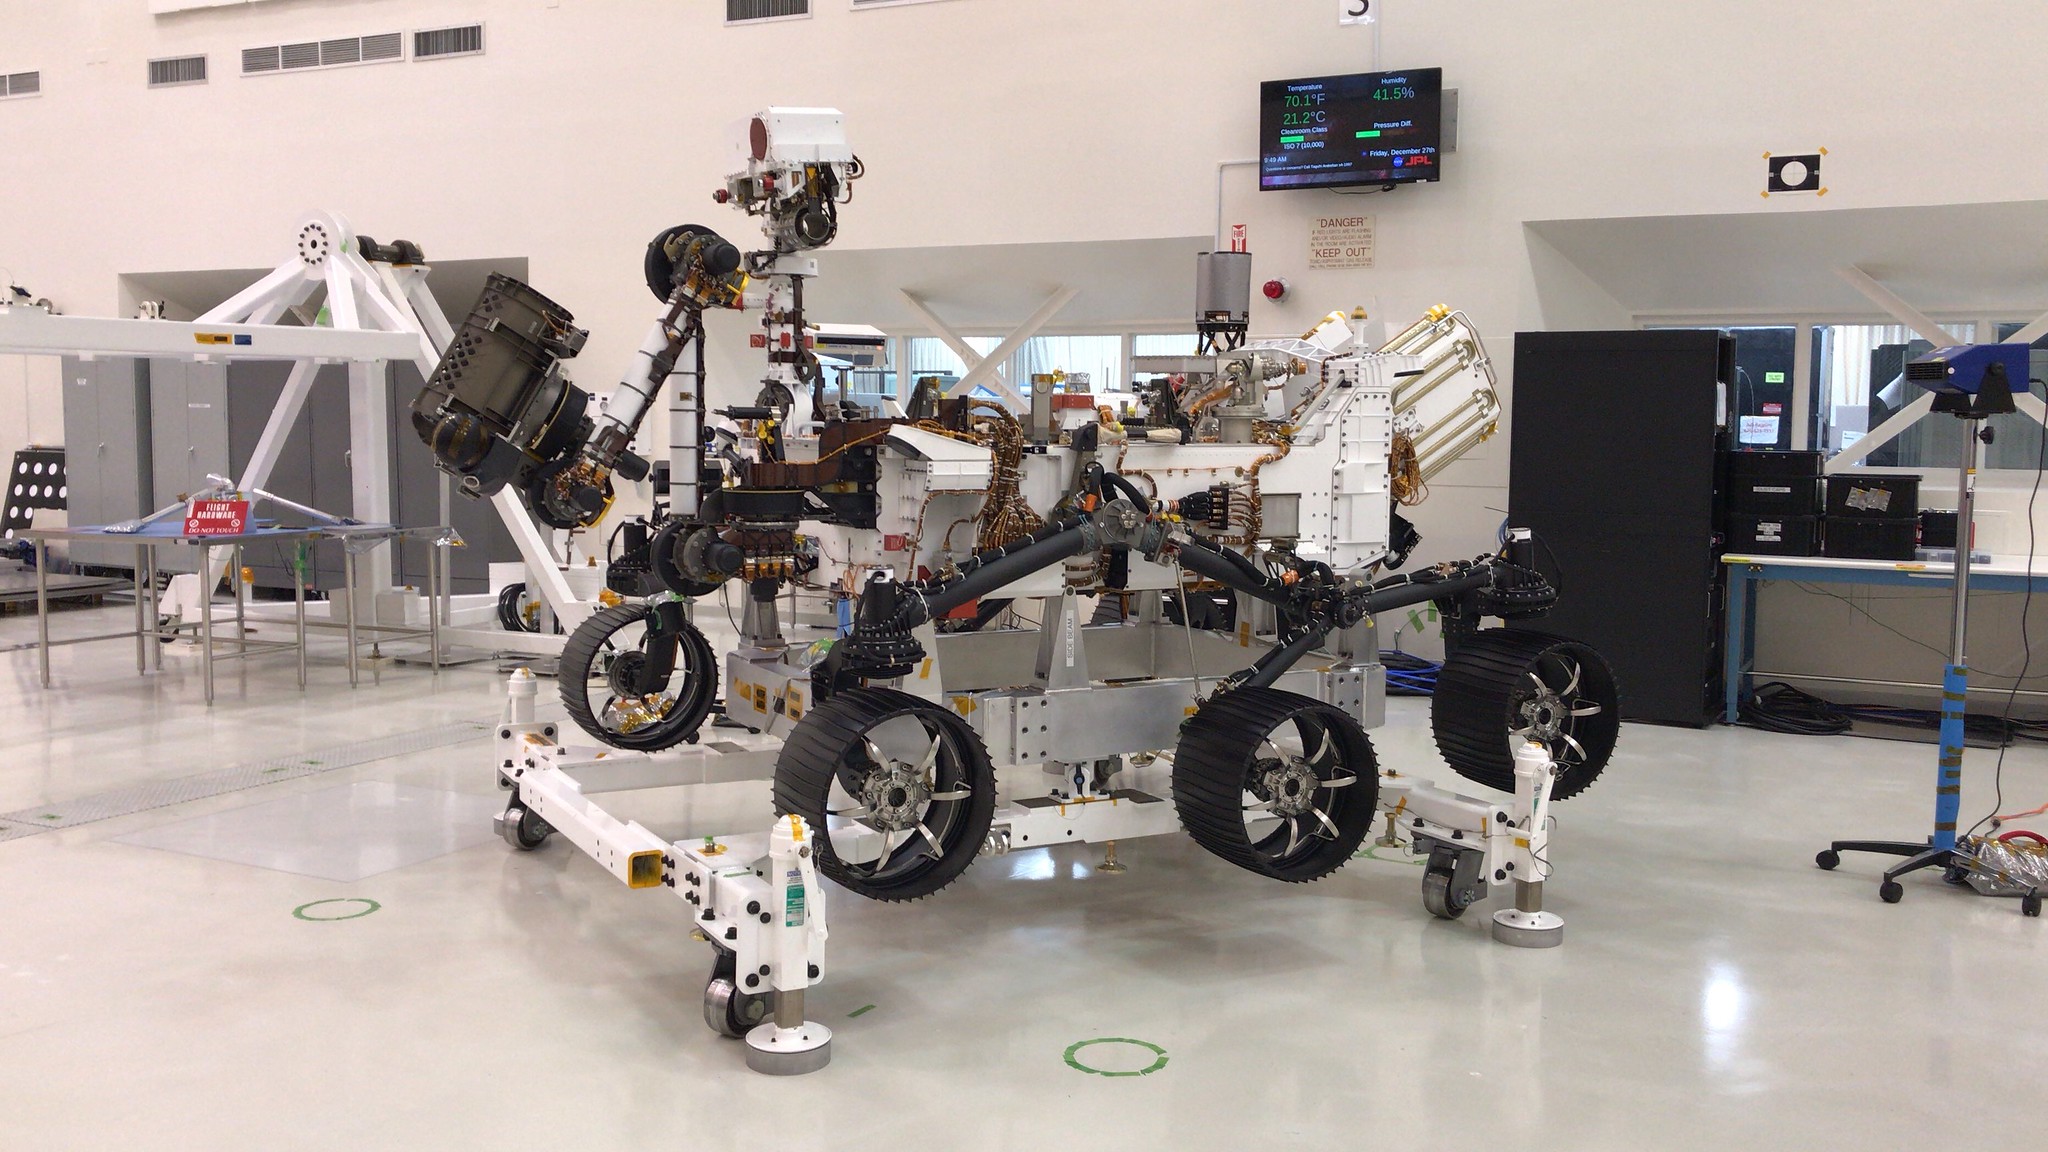 NASA's Mars 2020 Rover